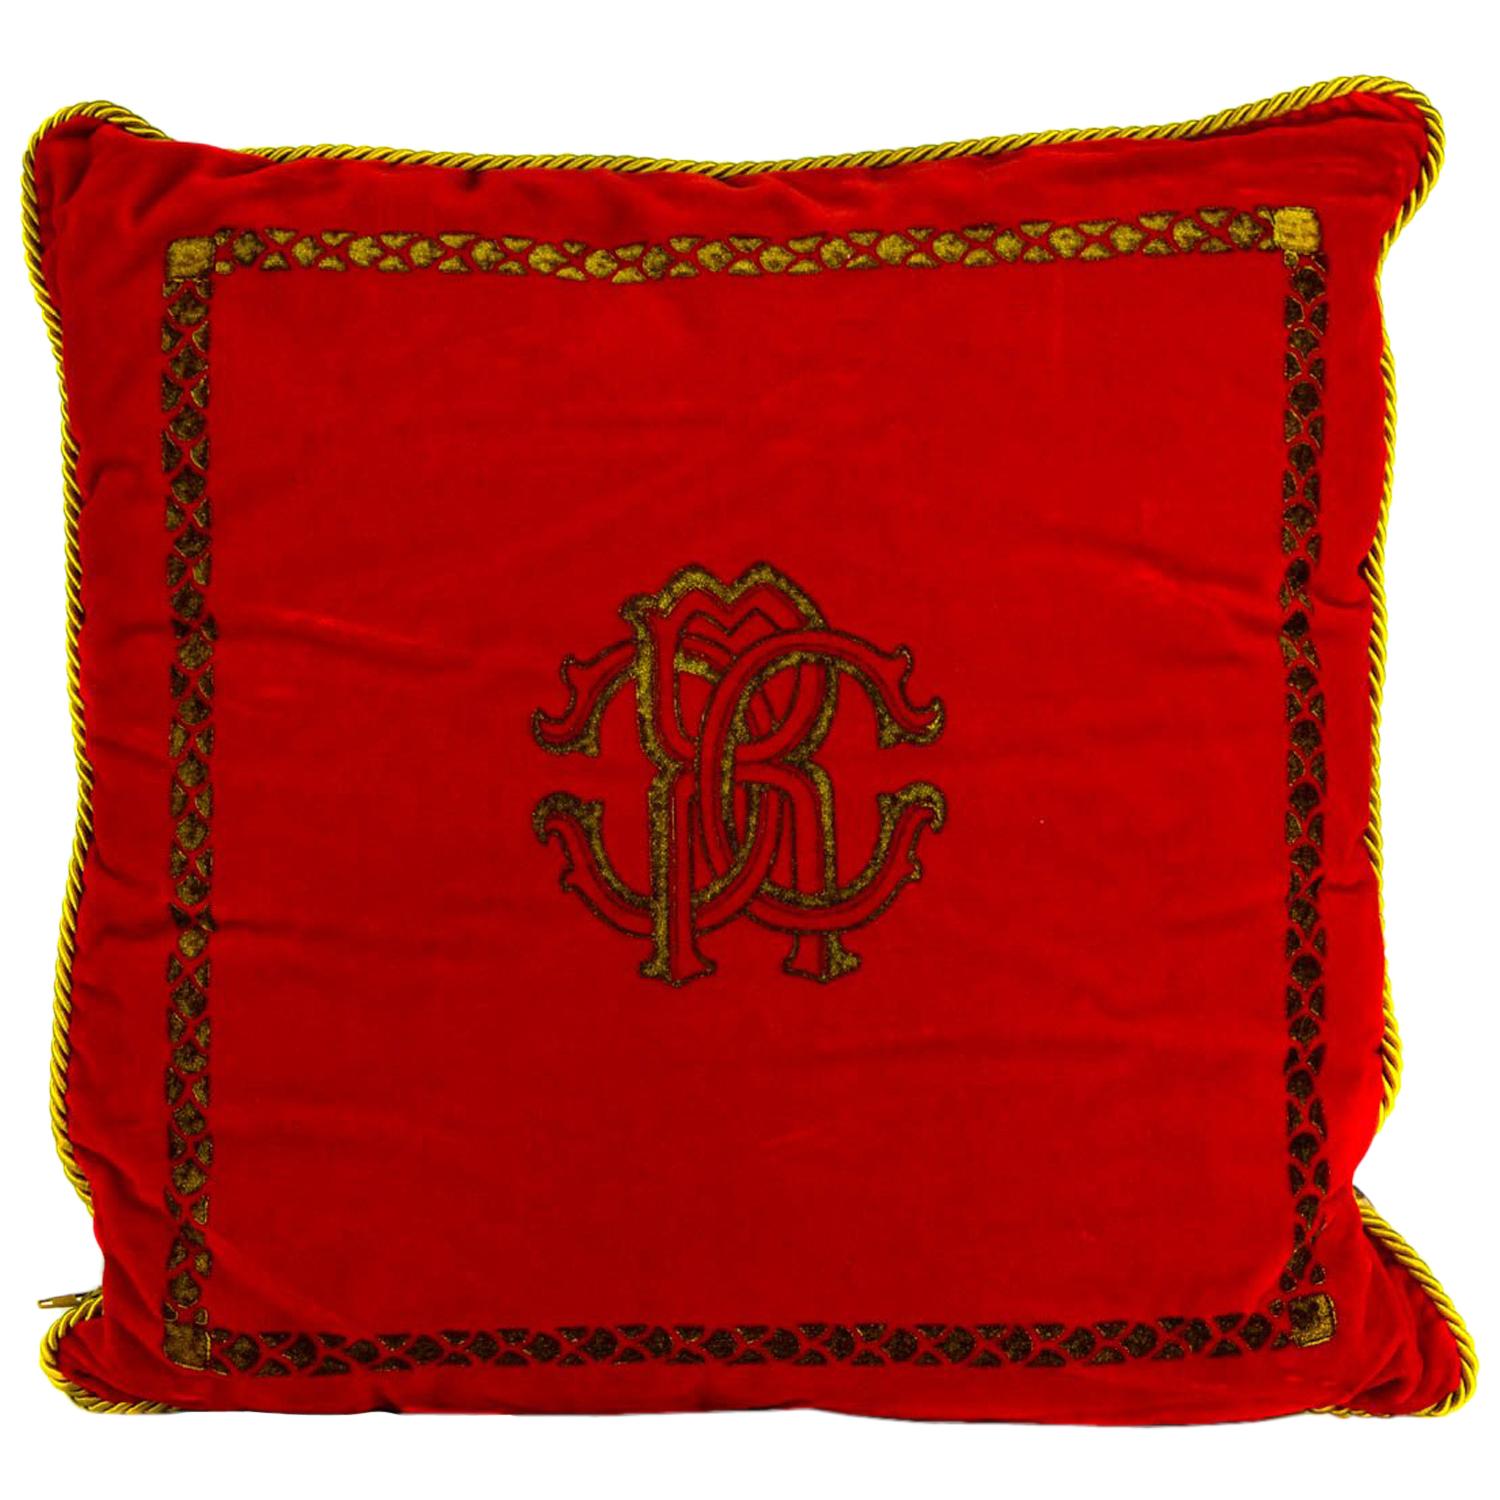 Roberto Cavalli Home Decorative Bright Red Cotton Square Cushion For Sale